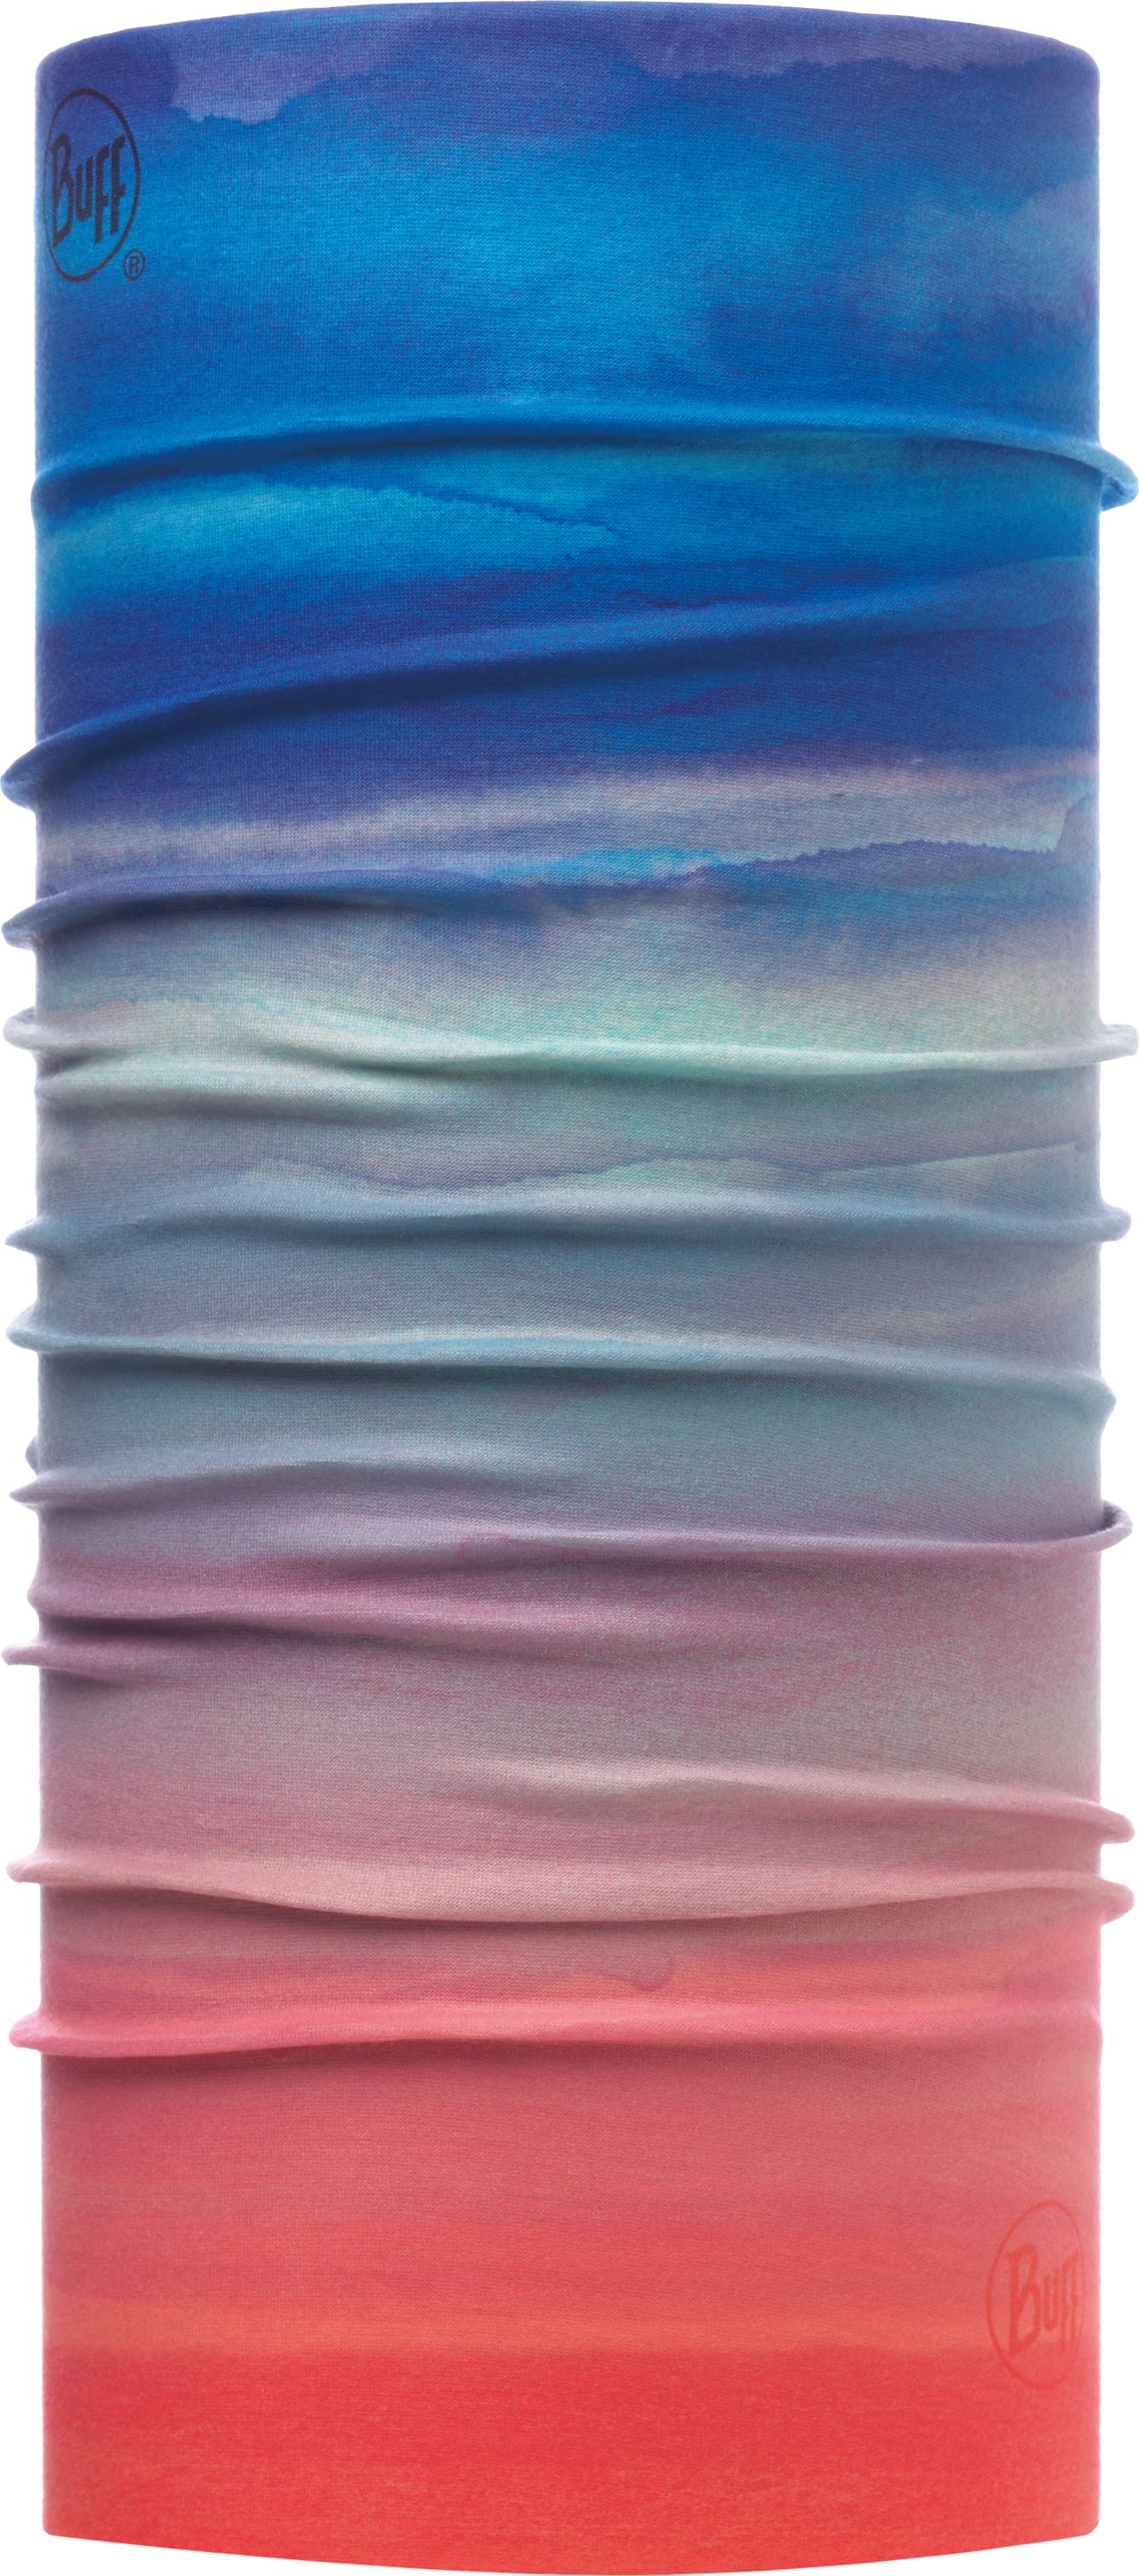 Бандана Buff UV Insect Shield Protection Sunset Multi, цвет: разноцветный. 117046.555.10.00. Размер универсальный